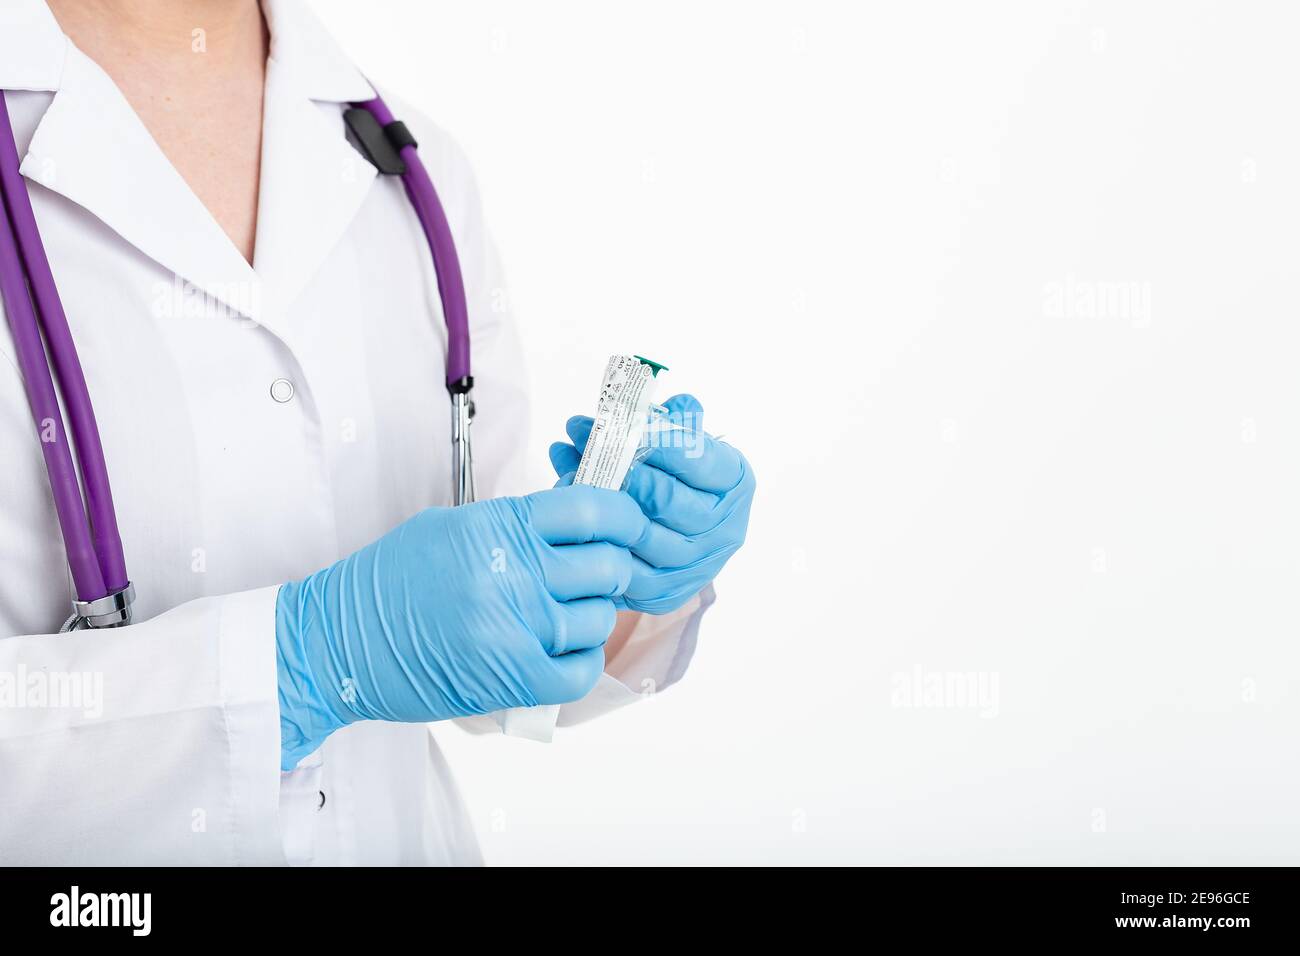 Une jeune infirmière dans un masque ouvre une seringue sur un fond blanc dans un manteau blanc, pour faire une vaccination, une injection. Le concept de vaccination et Banque D'Images